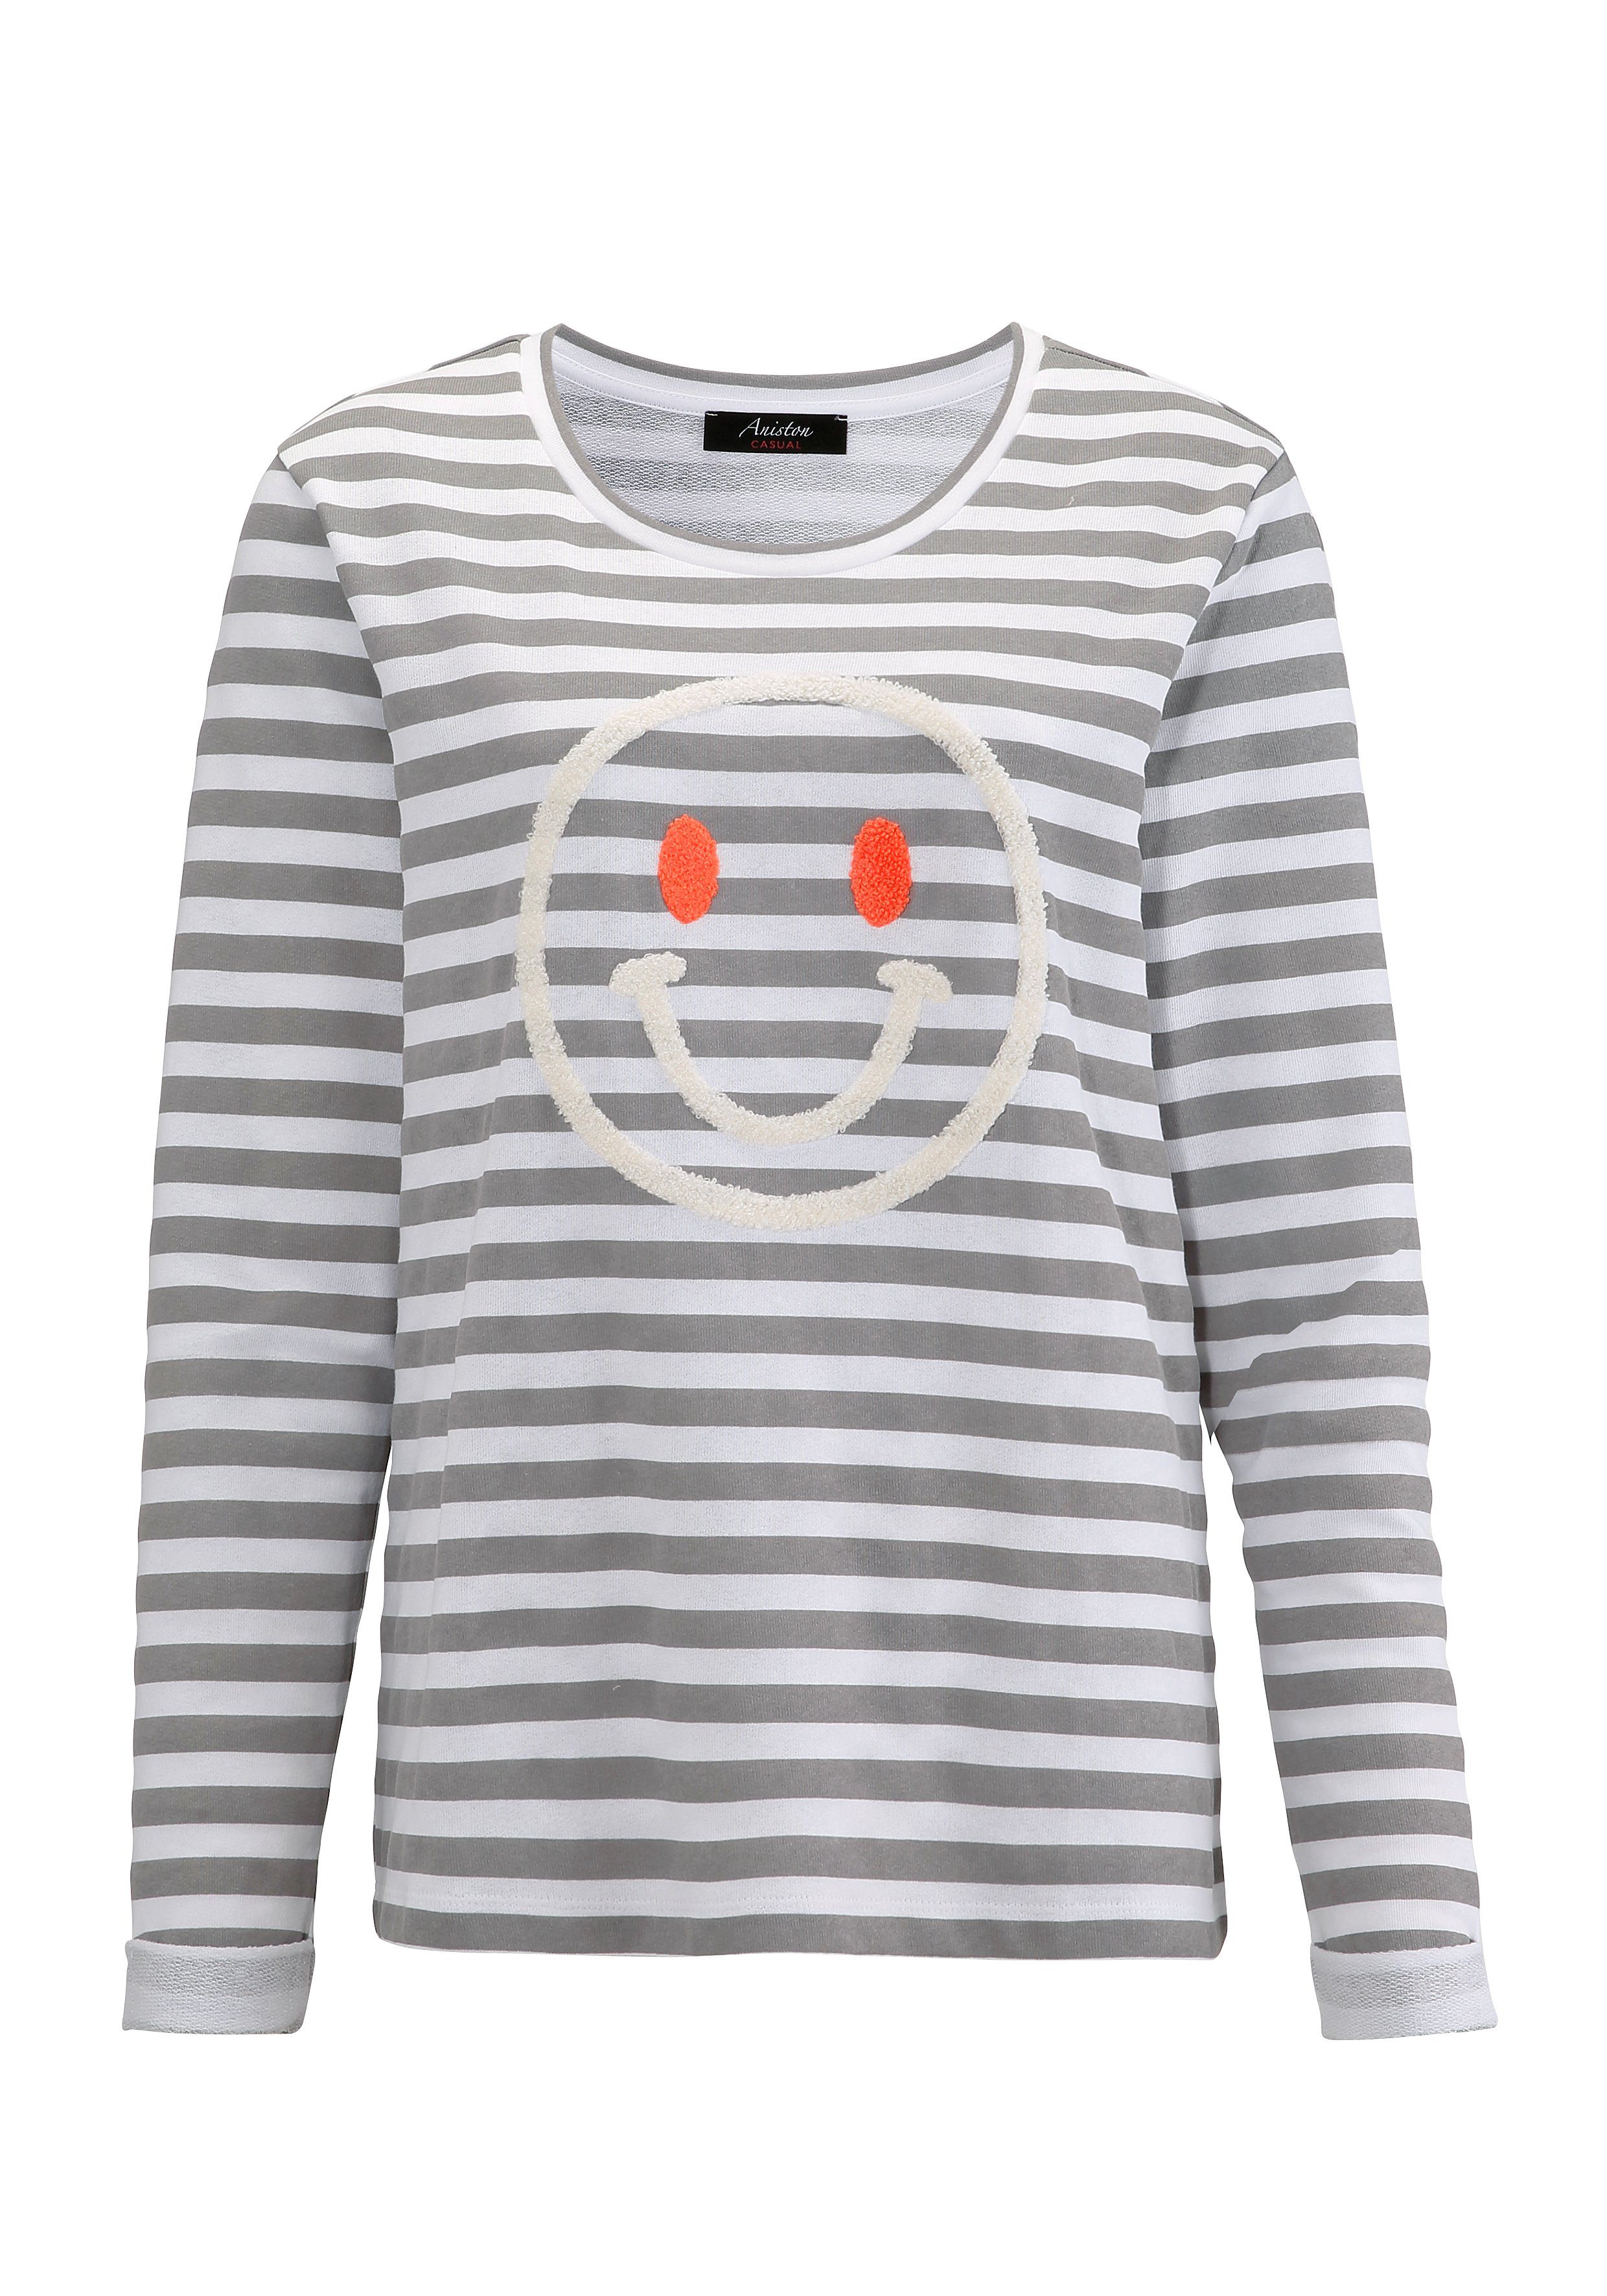 mit Sweatshirt Aniston hellgrau-weiß-wollweiß-orange CASUAL fröhlicher Smiley-Applikation